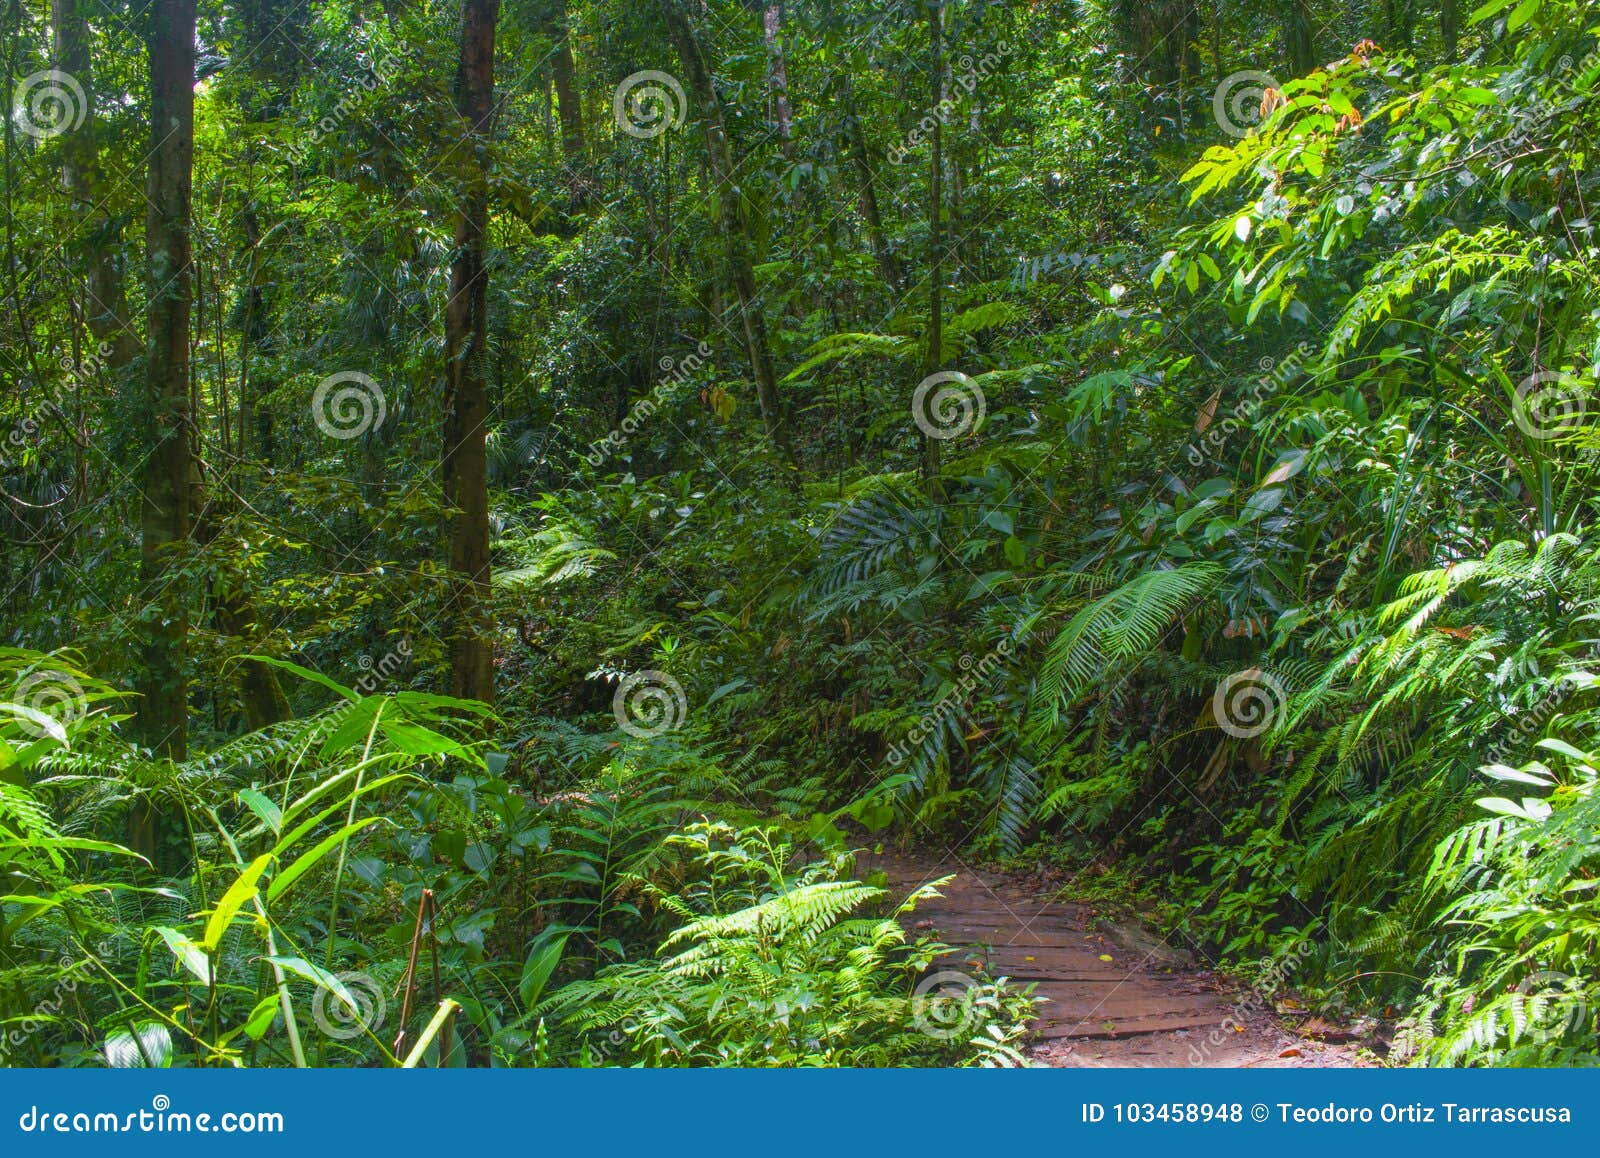 风景森林风景、入口对森林，绿色在曲线楼梯盖的青苔和地衣在热带密林 库存图片 - 图片 包括有 小径, 本质: 149130661